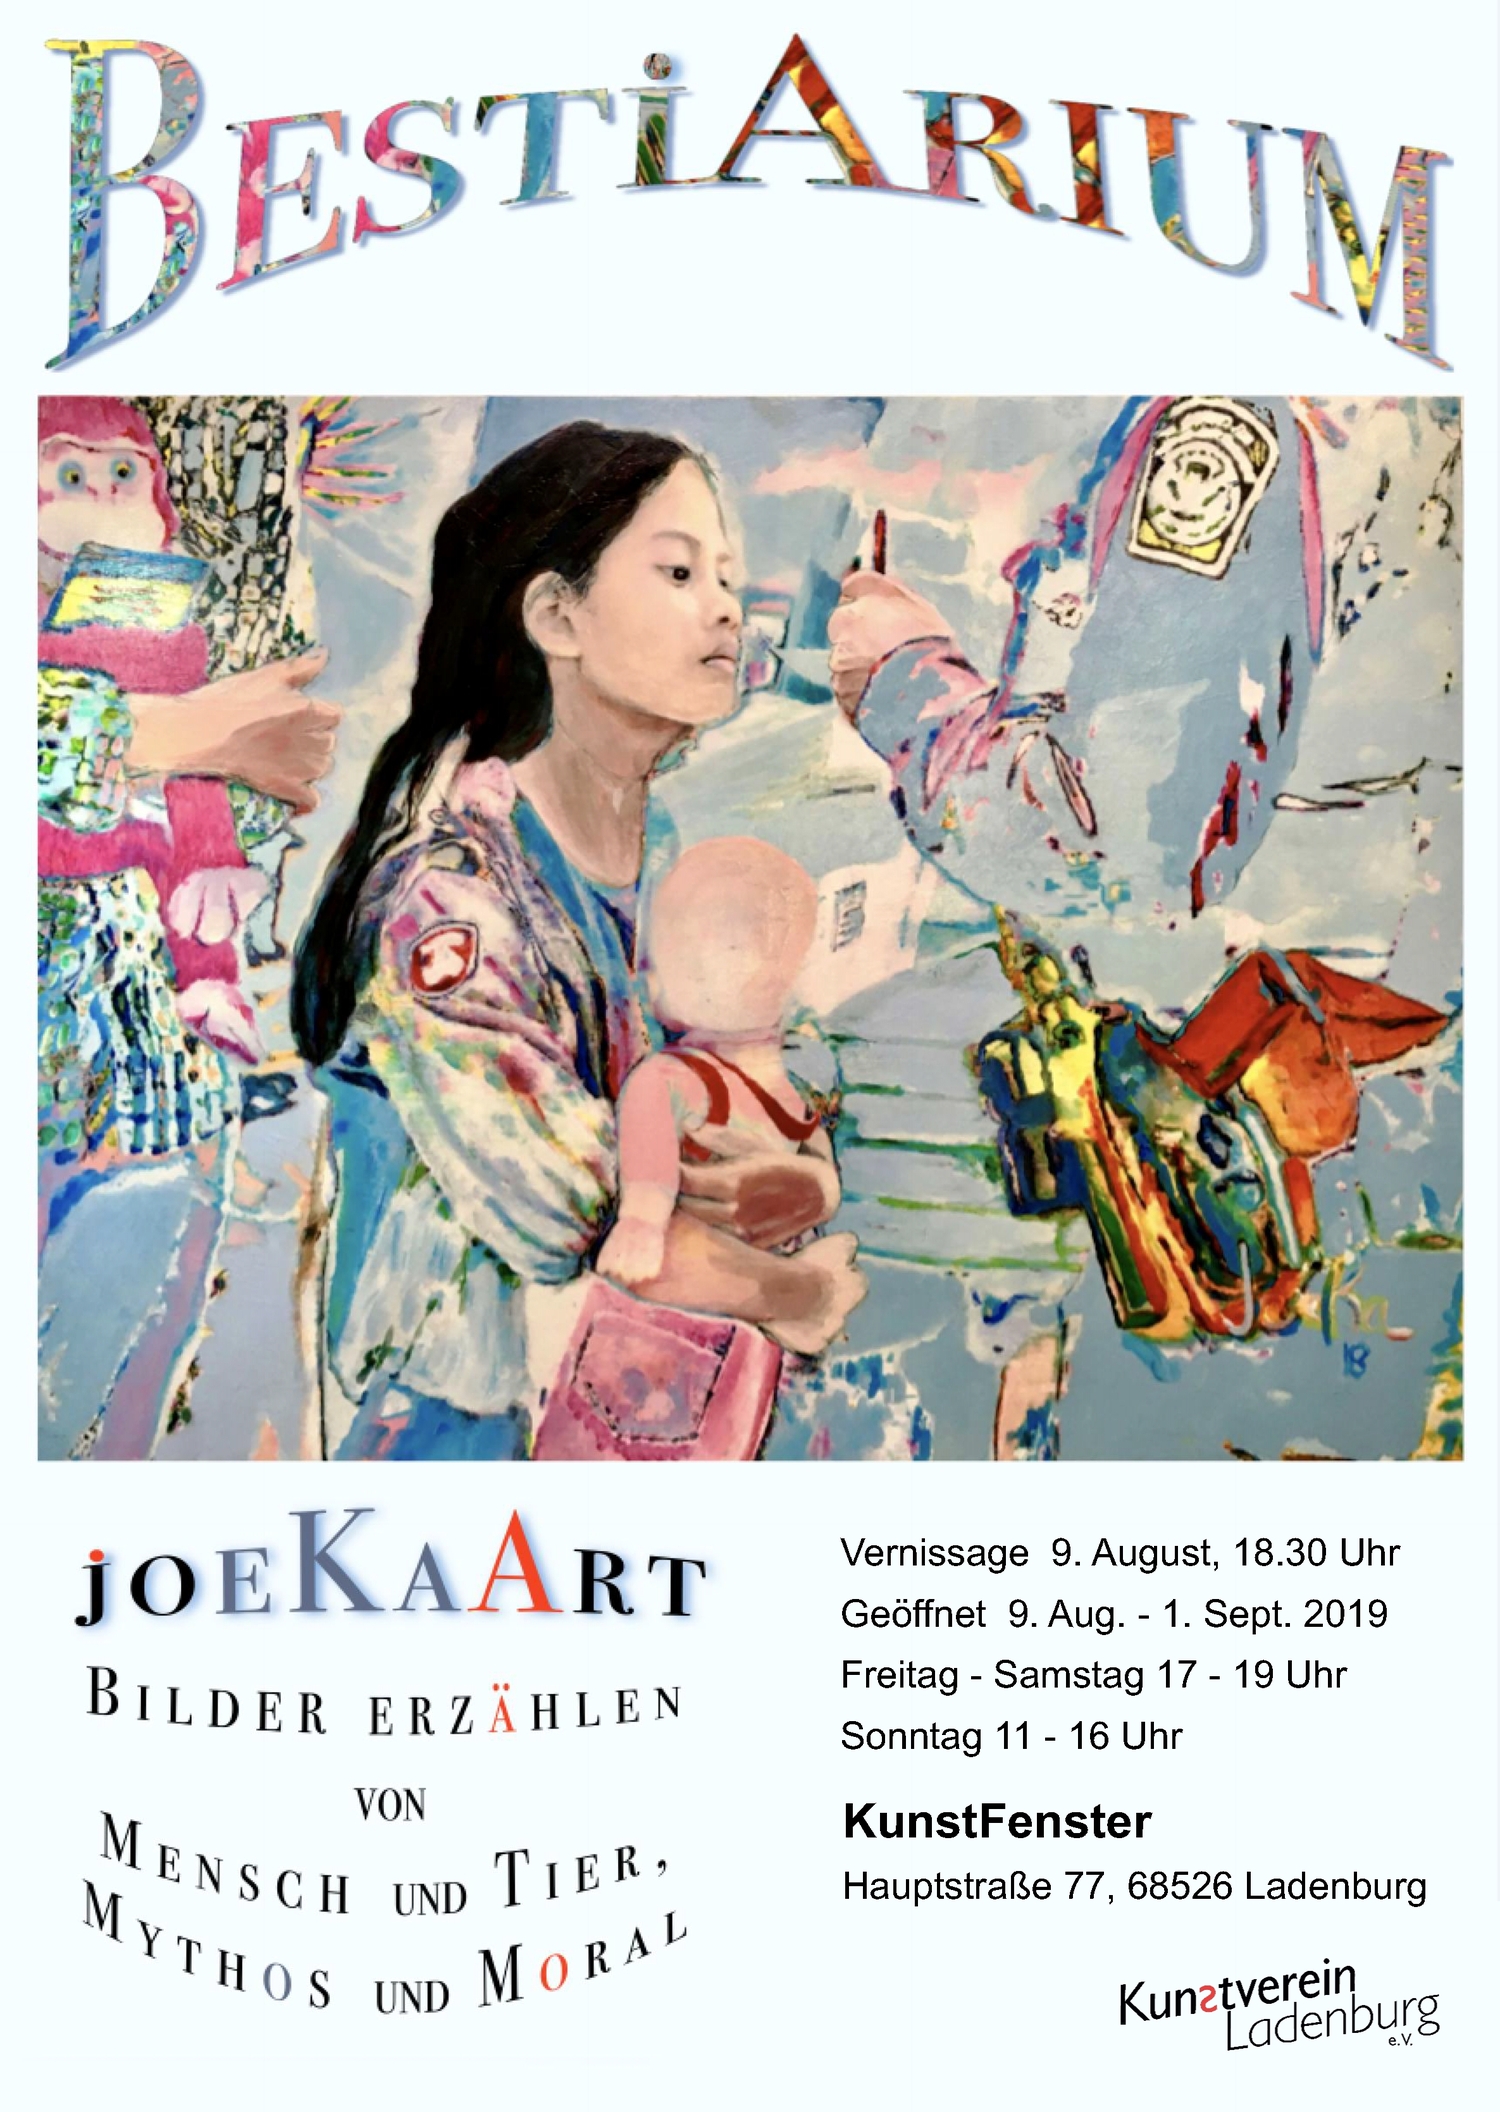 /images/kvl/Ausstellungen/20190809_joekaart/original/00_joekaart plakat.jpg